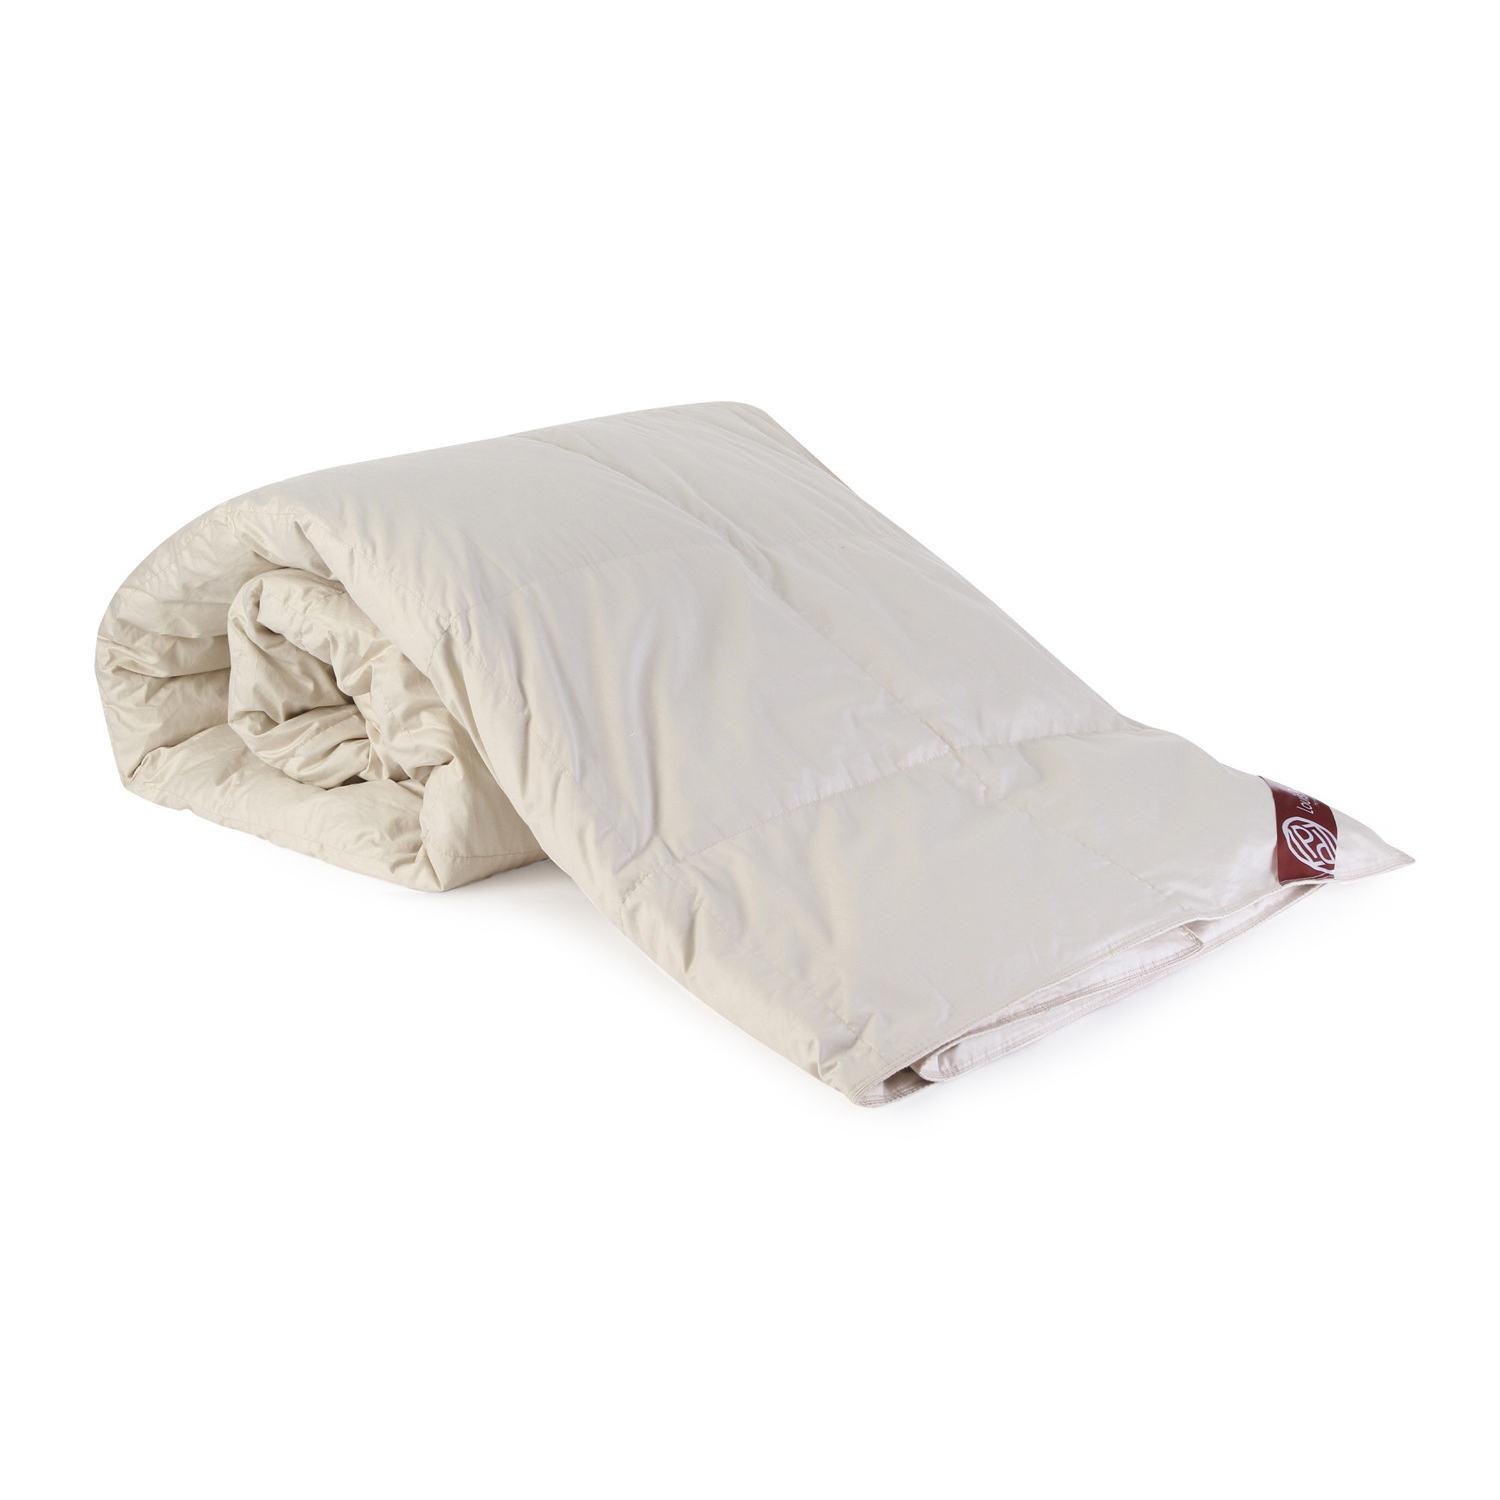 Пуховое одеяло Louis Pascal Николь бежевое 200х220 см (ЛП2022), цвет бежевый